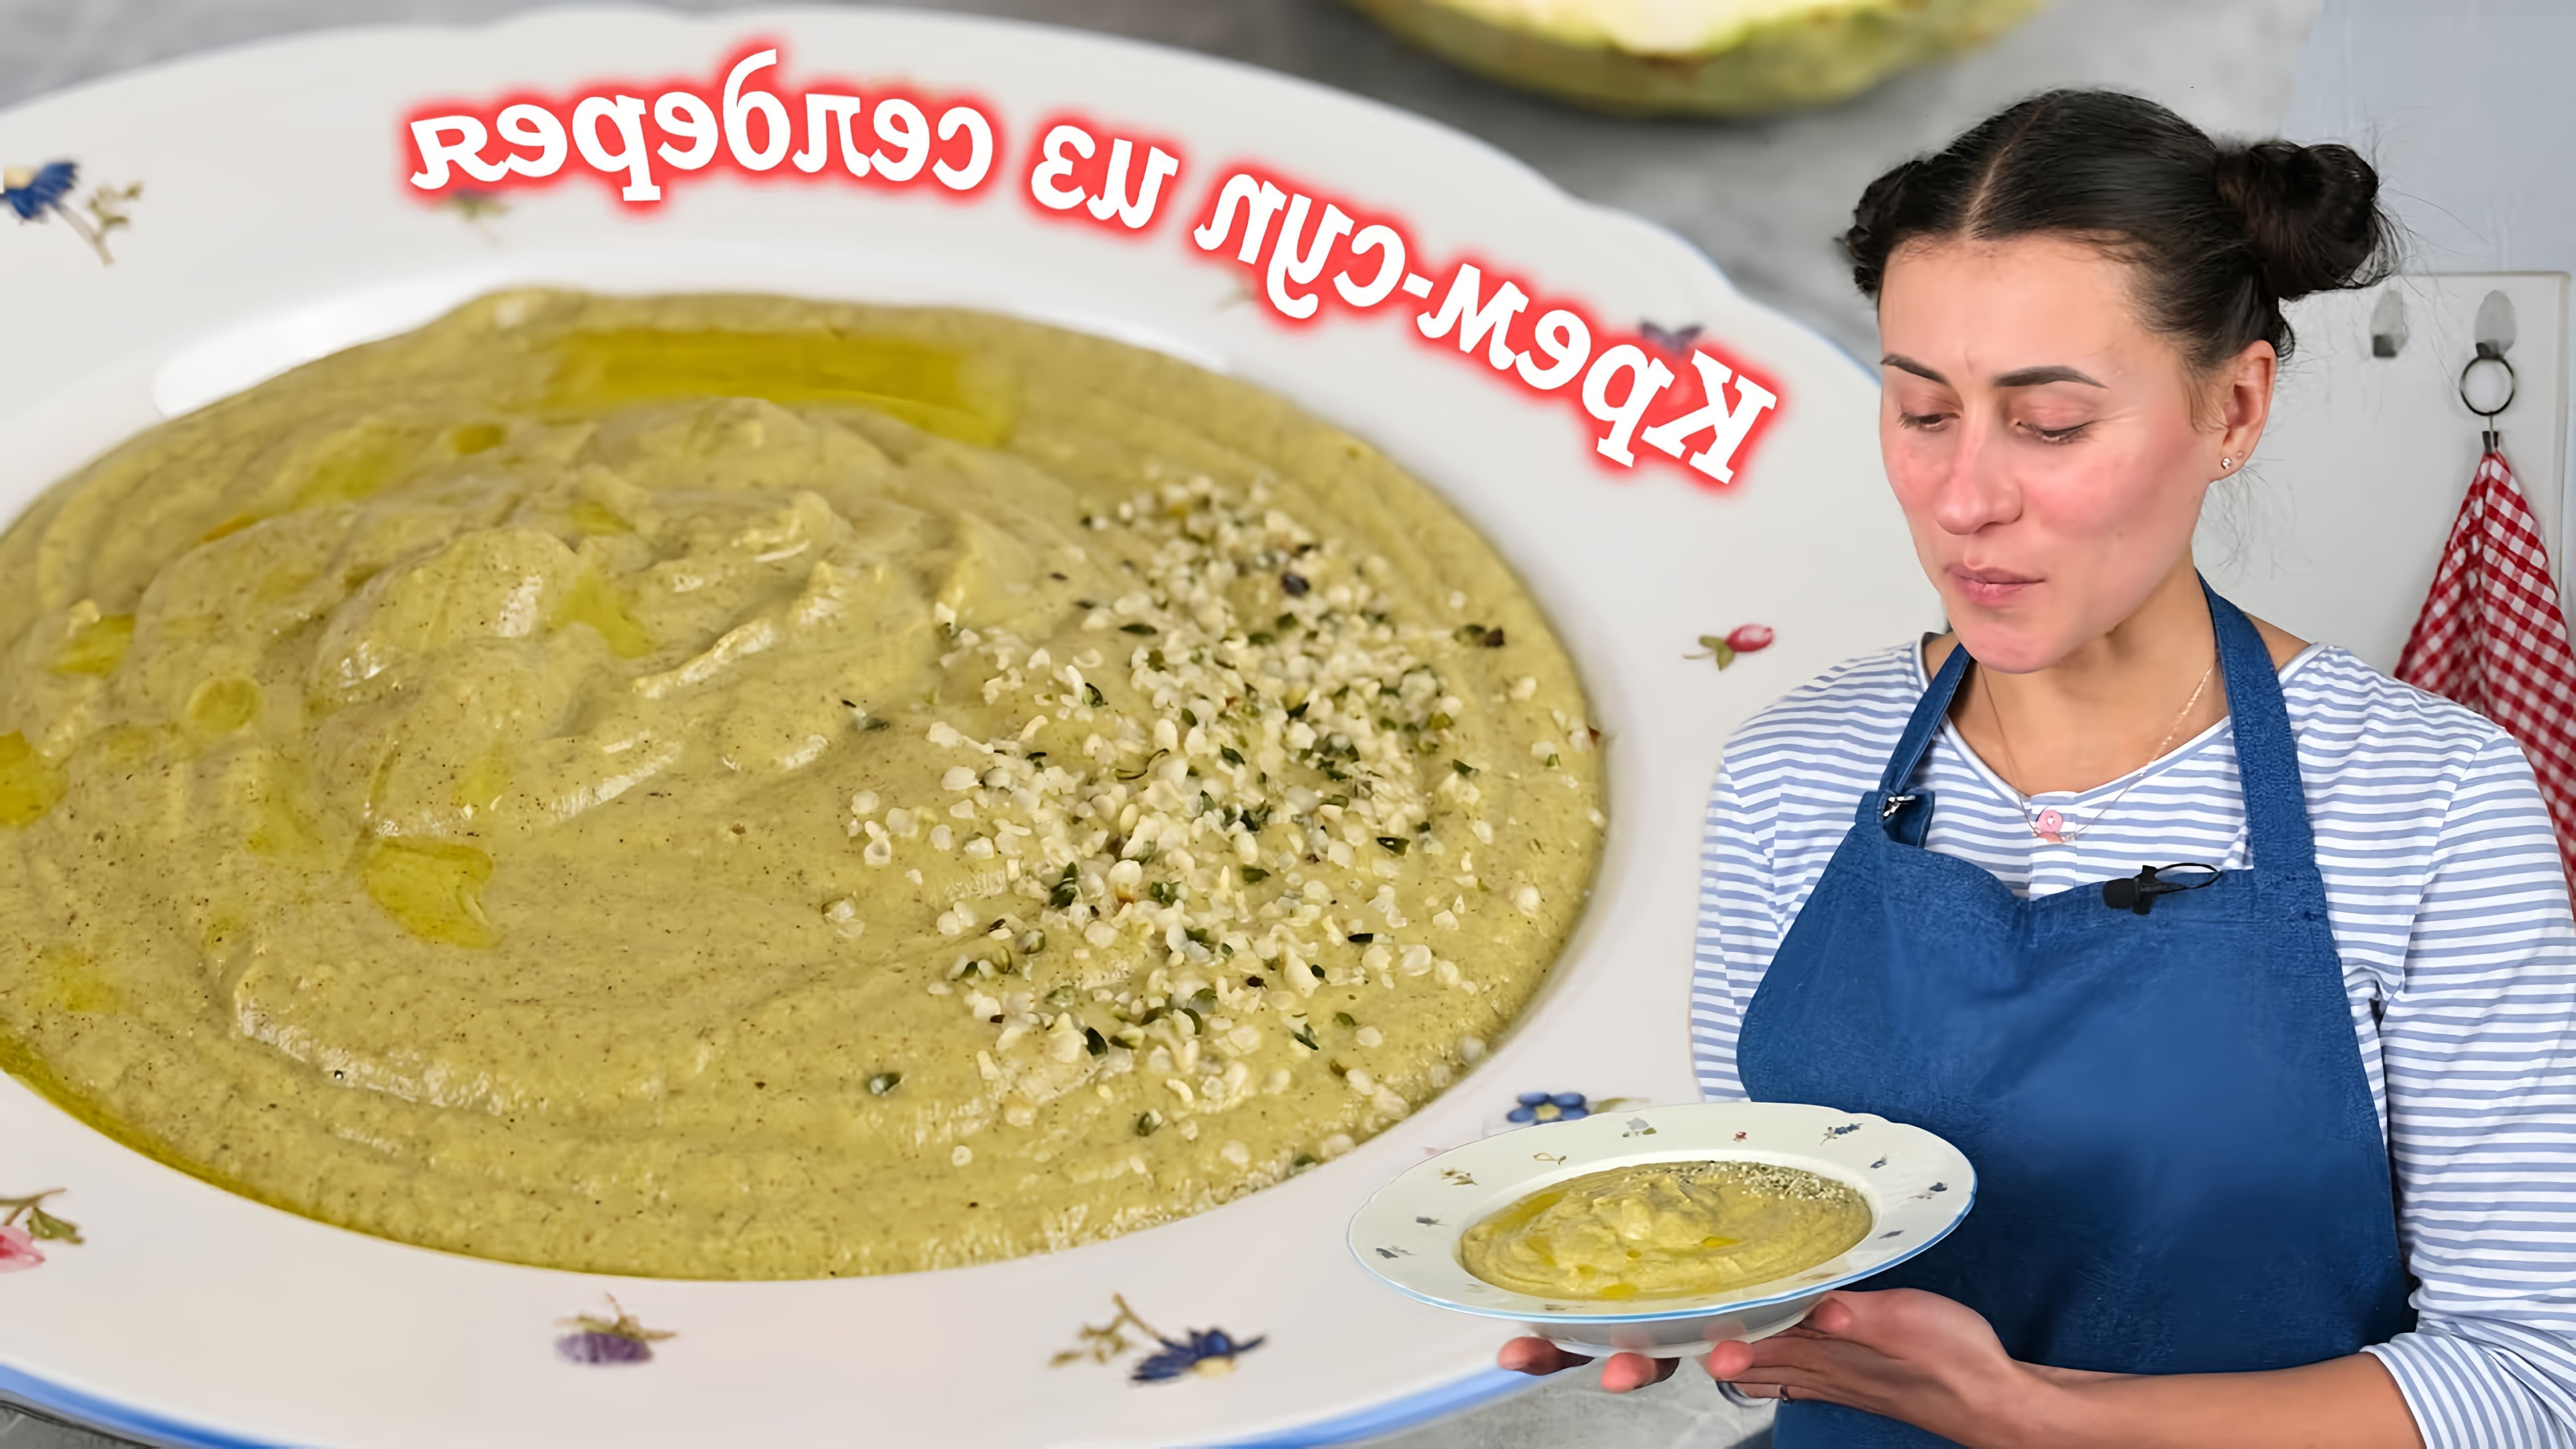 В этом видео демонстрируется рецепт крем-супа из корневого сельдерея на кокосовом молоке